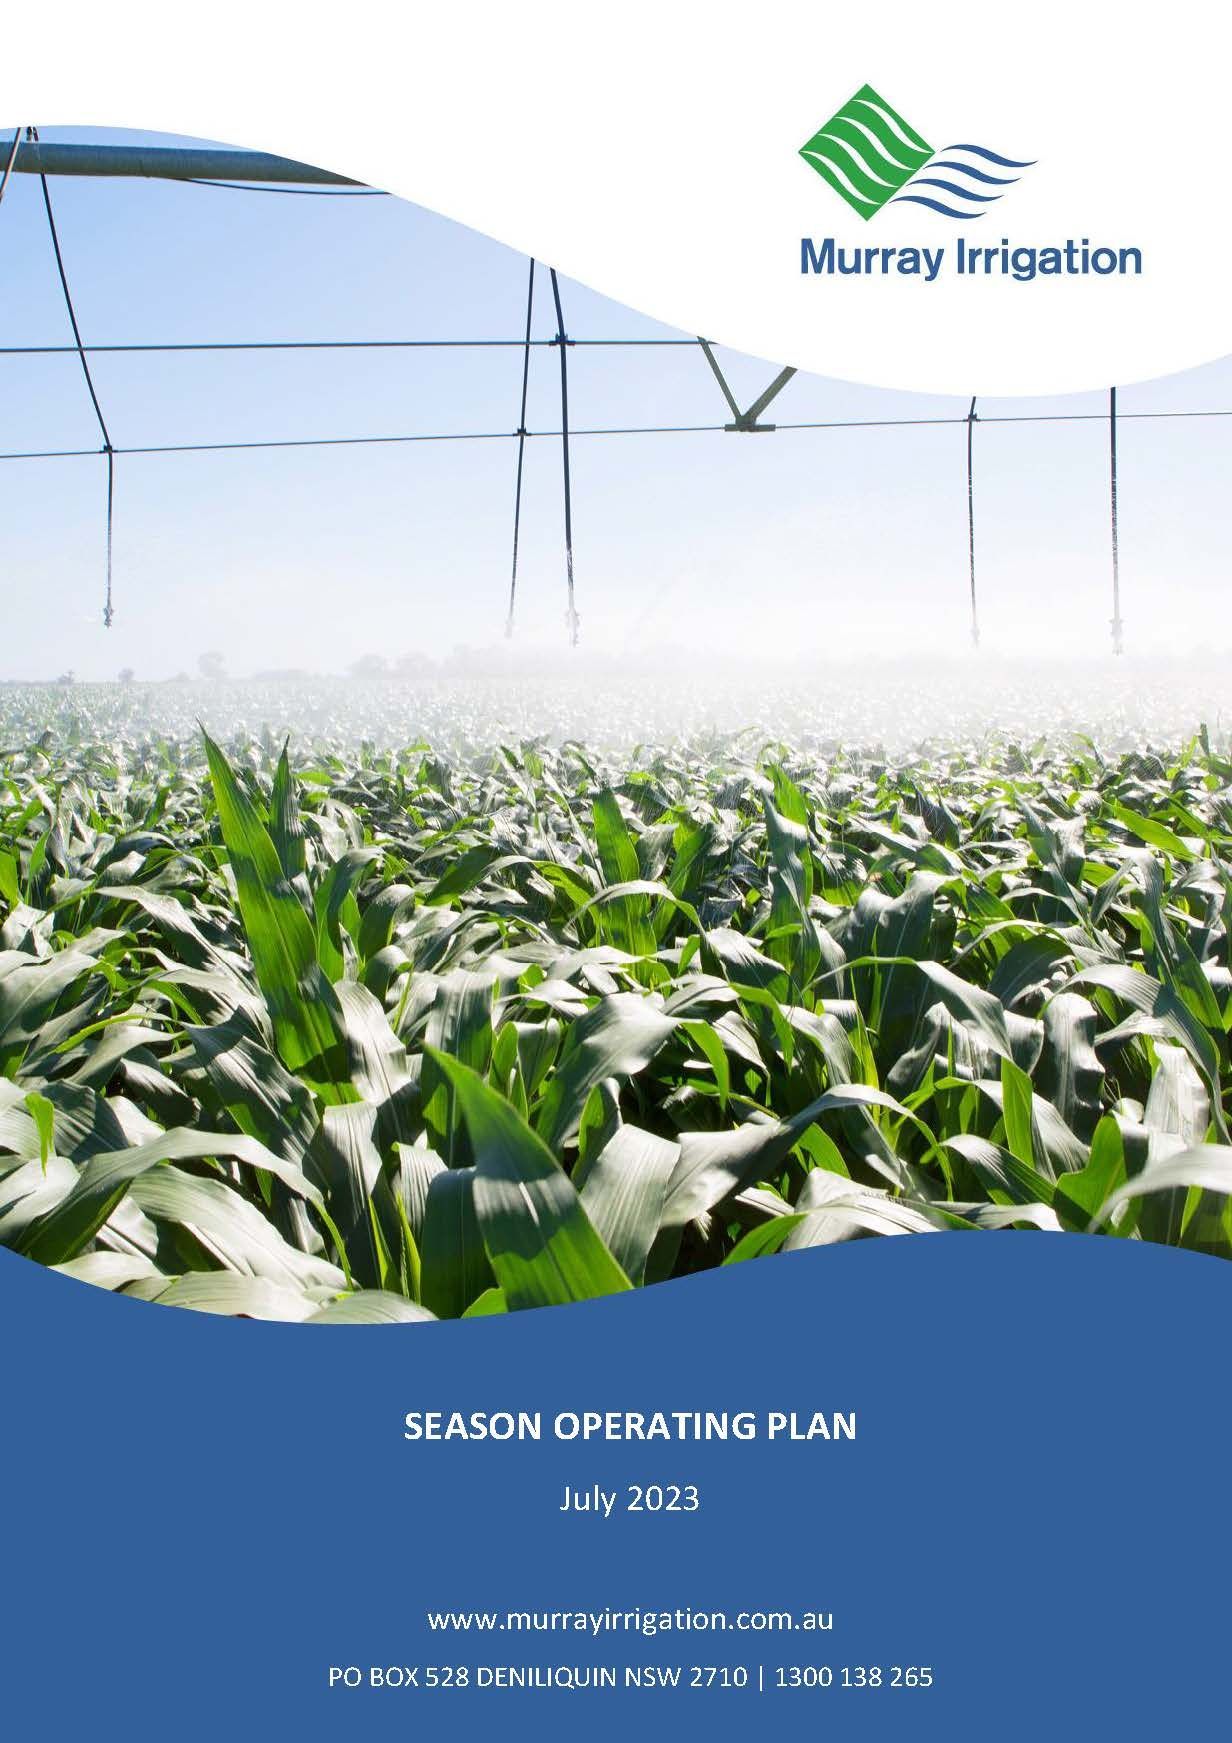 Download Murray Irrigation Season Operating Plan 2022-2023